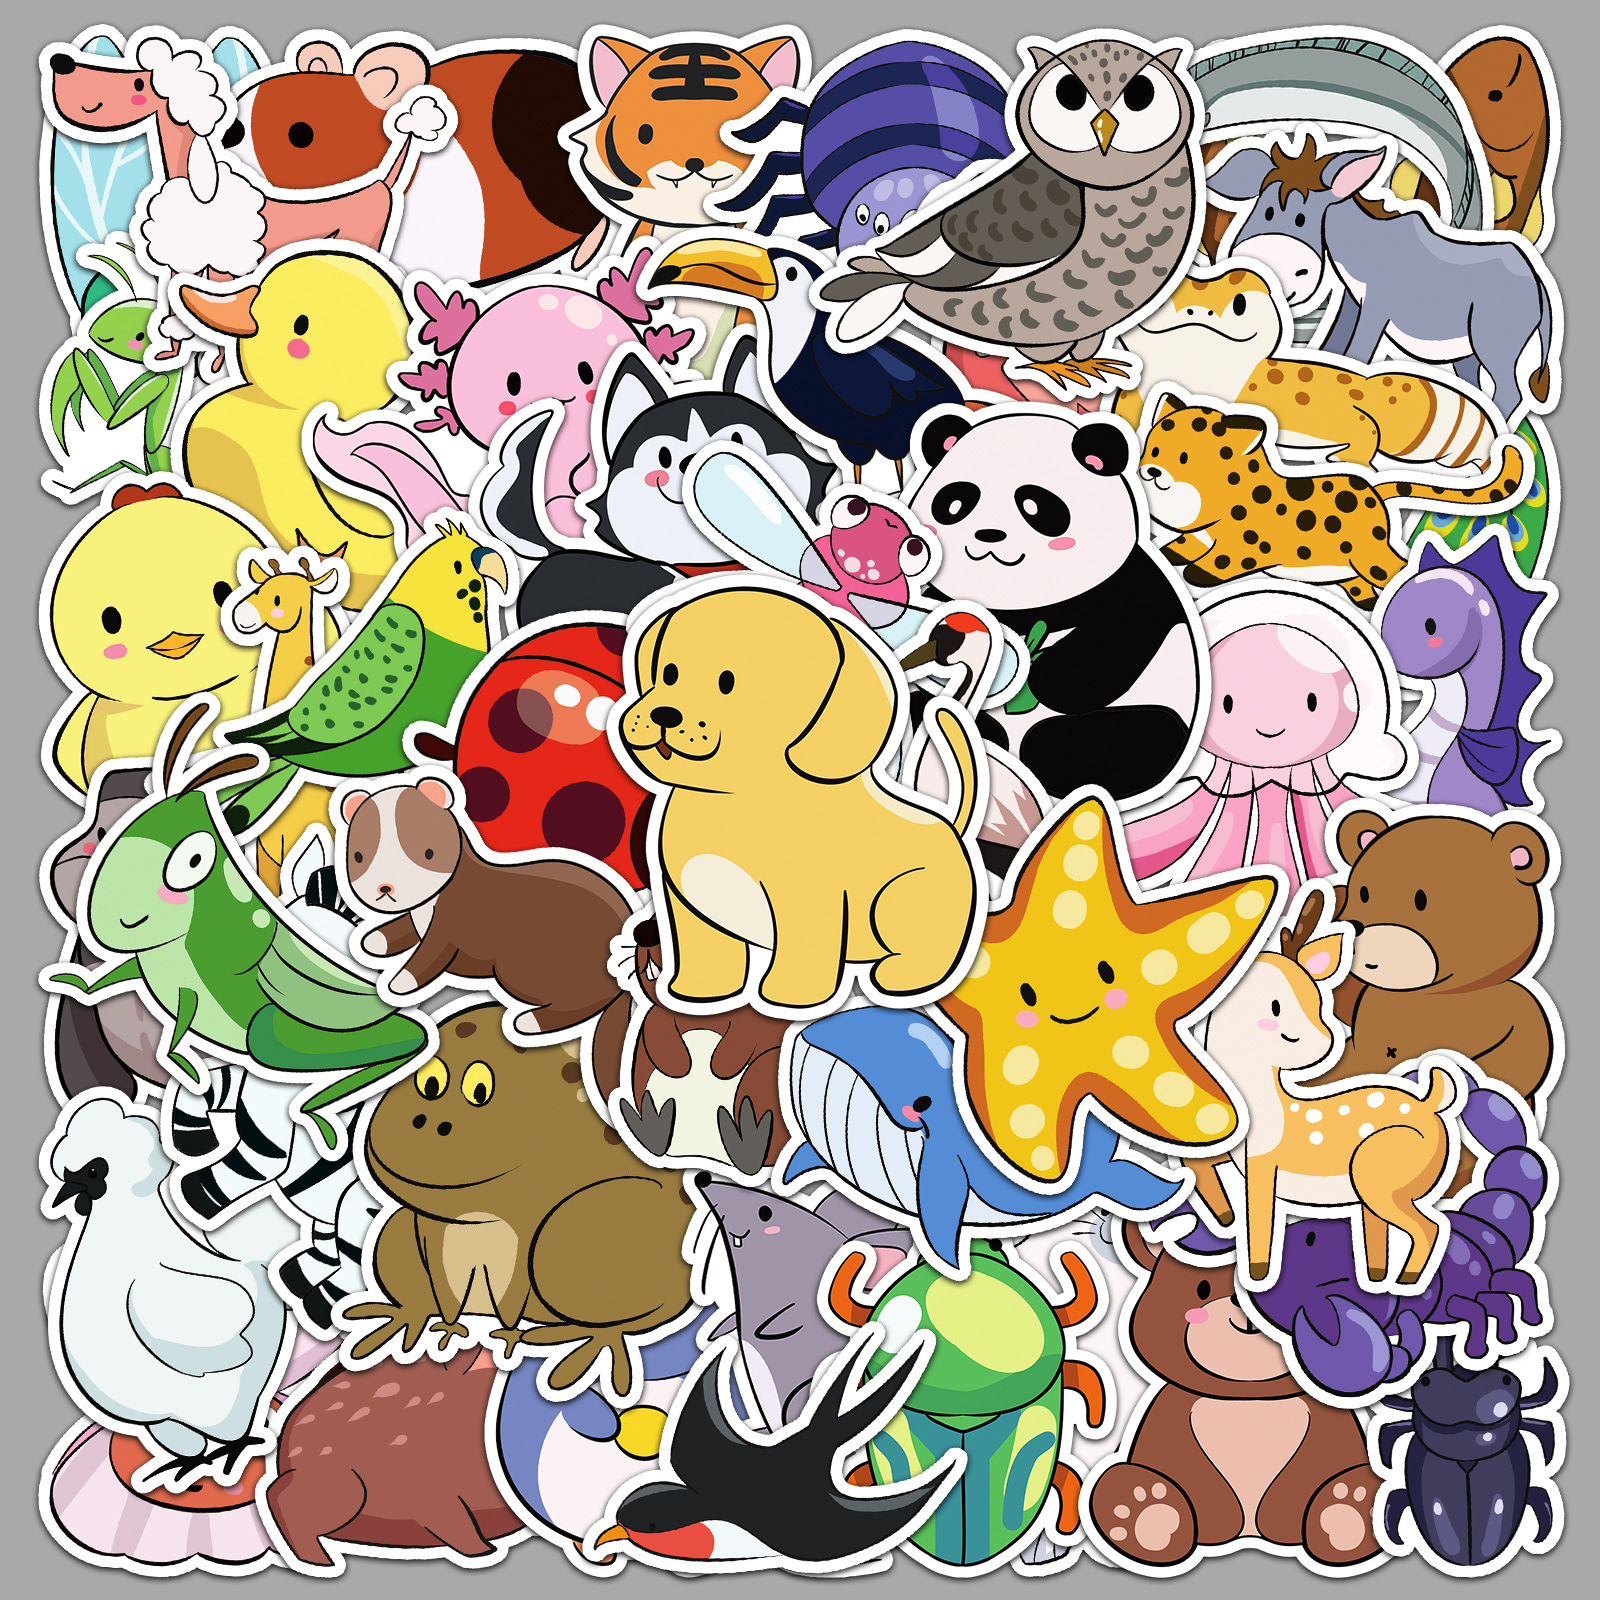 50张原创简笔动物贴纸可爱小熊鸭子卡通图案装饰水杯文具防水贴画